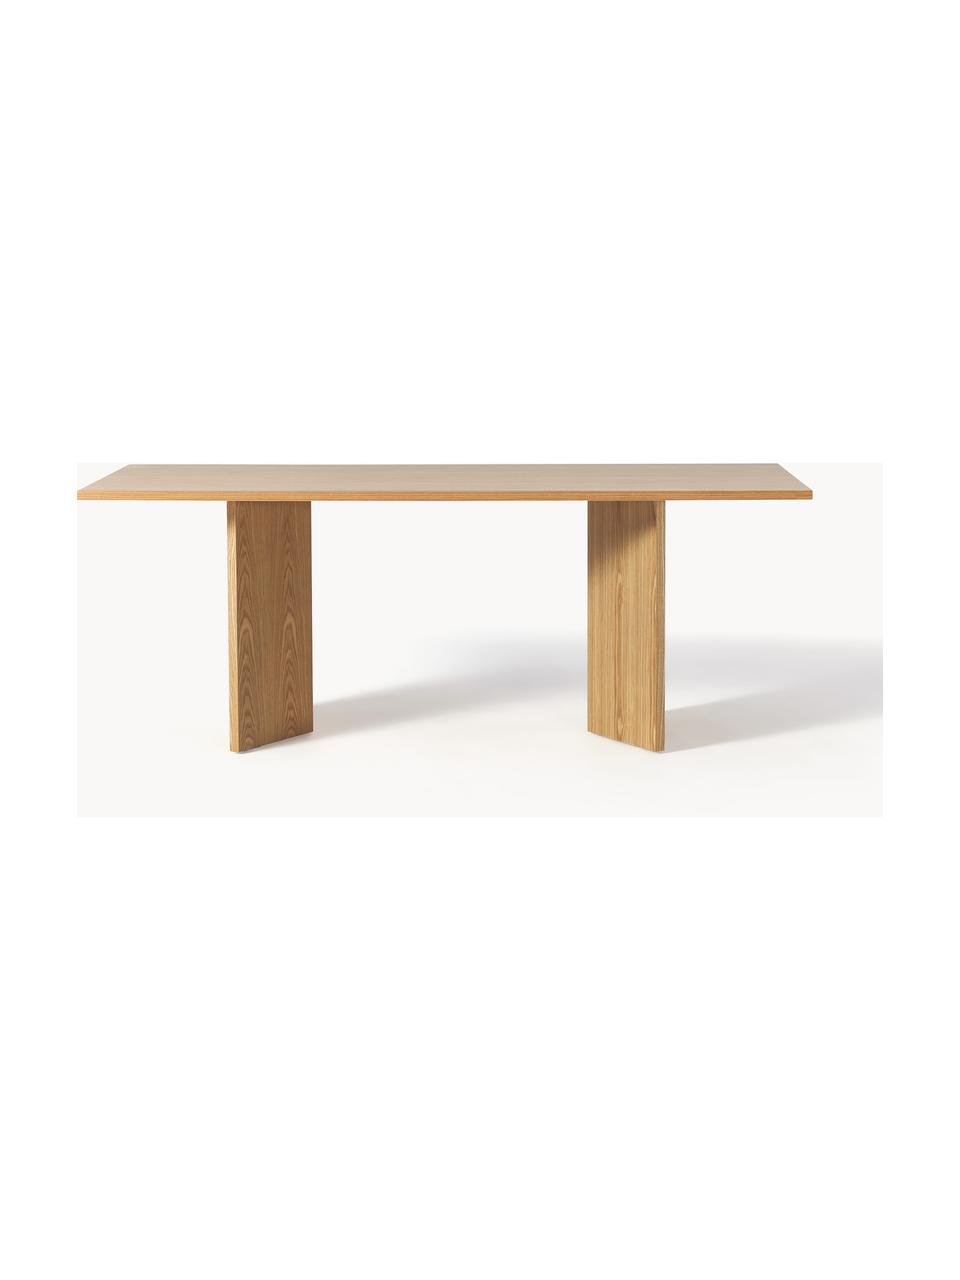 Dřevěný jídelní stůl Toni, 200 x 90 cm, Lakovaná dřevovláknitá deska střední hustoty (MDF) s dubovou dýhou

Tento produkt je vyroben z udržitelných zdrojů dřeva s certifikací FSC®., Jasanové dřevo, Š 200 cm, H 90 cm